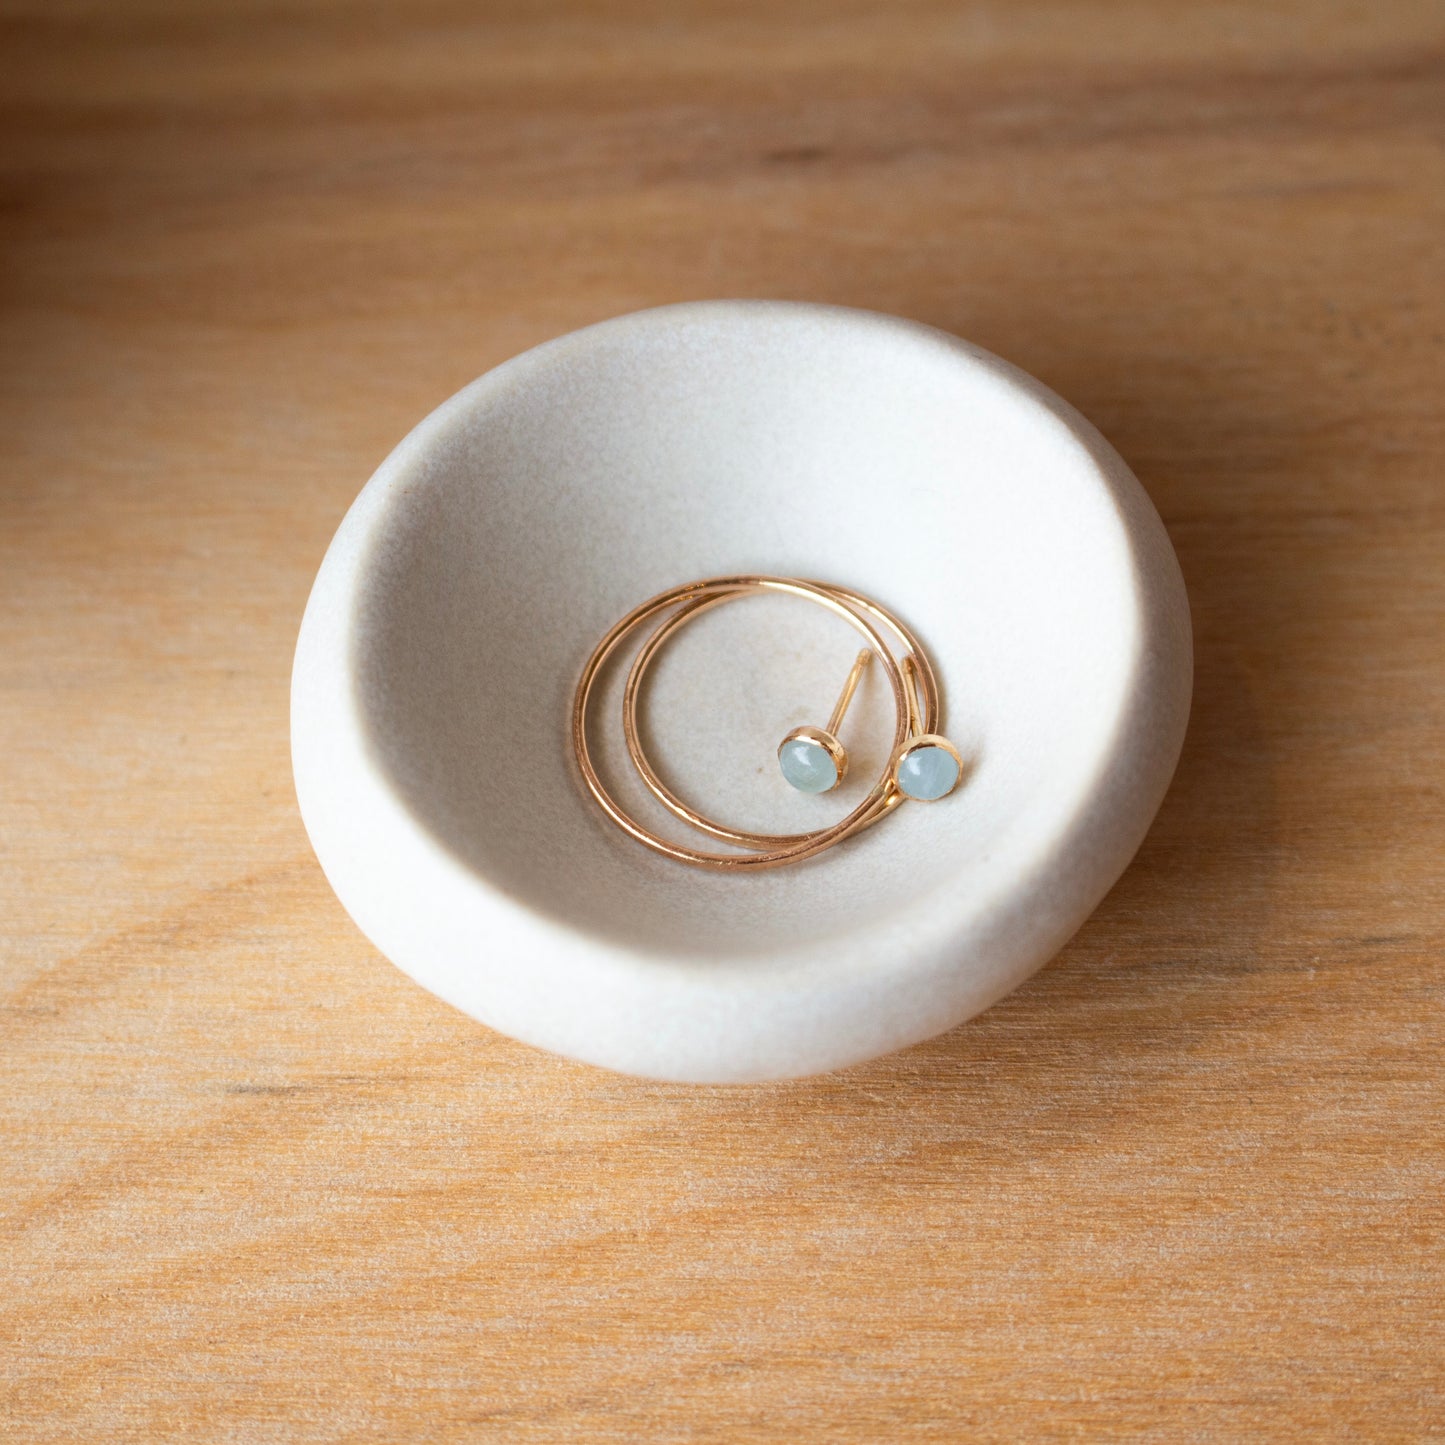 Tiny Ring Dish